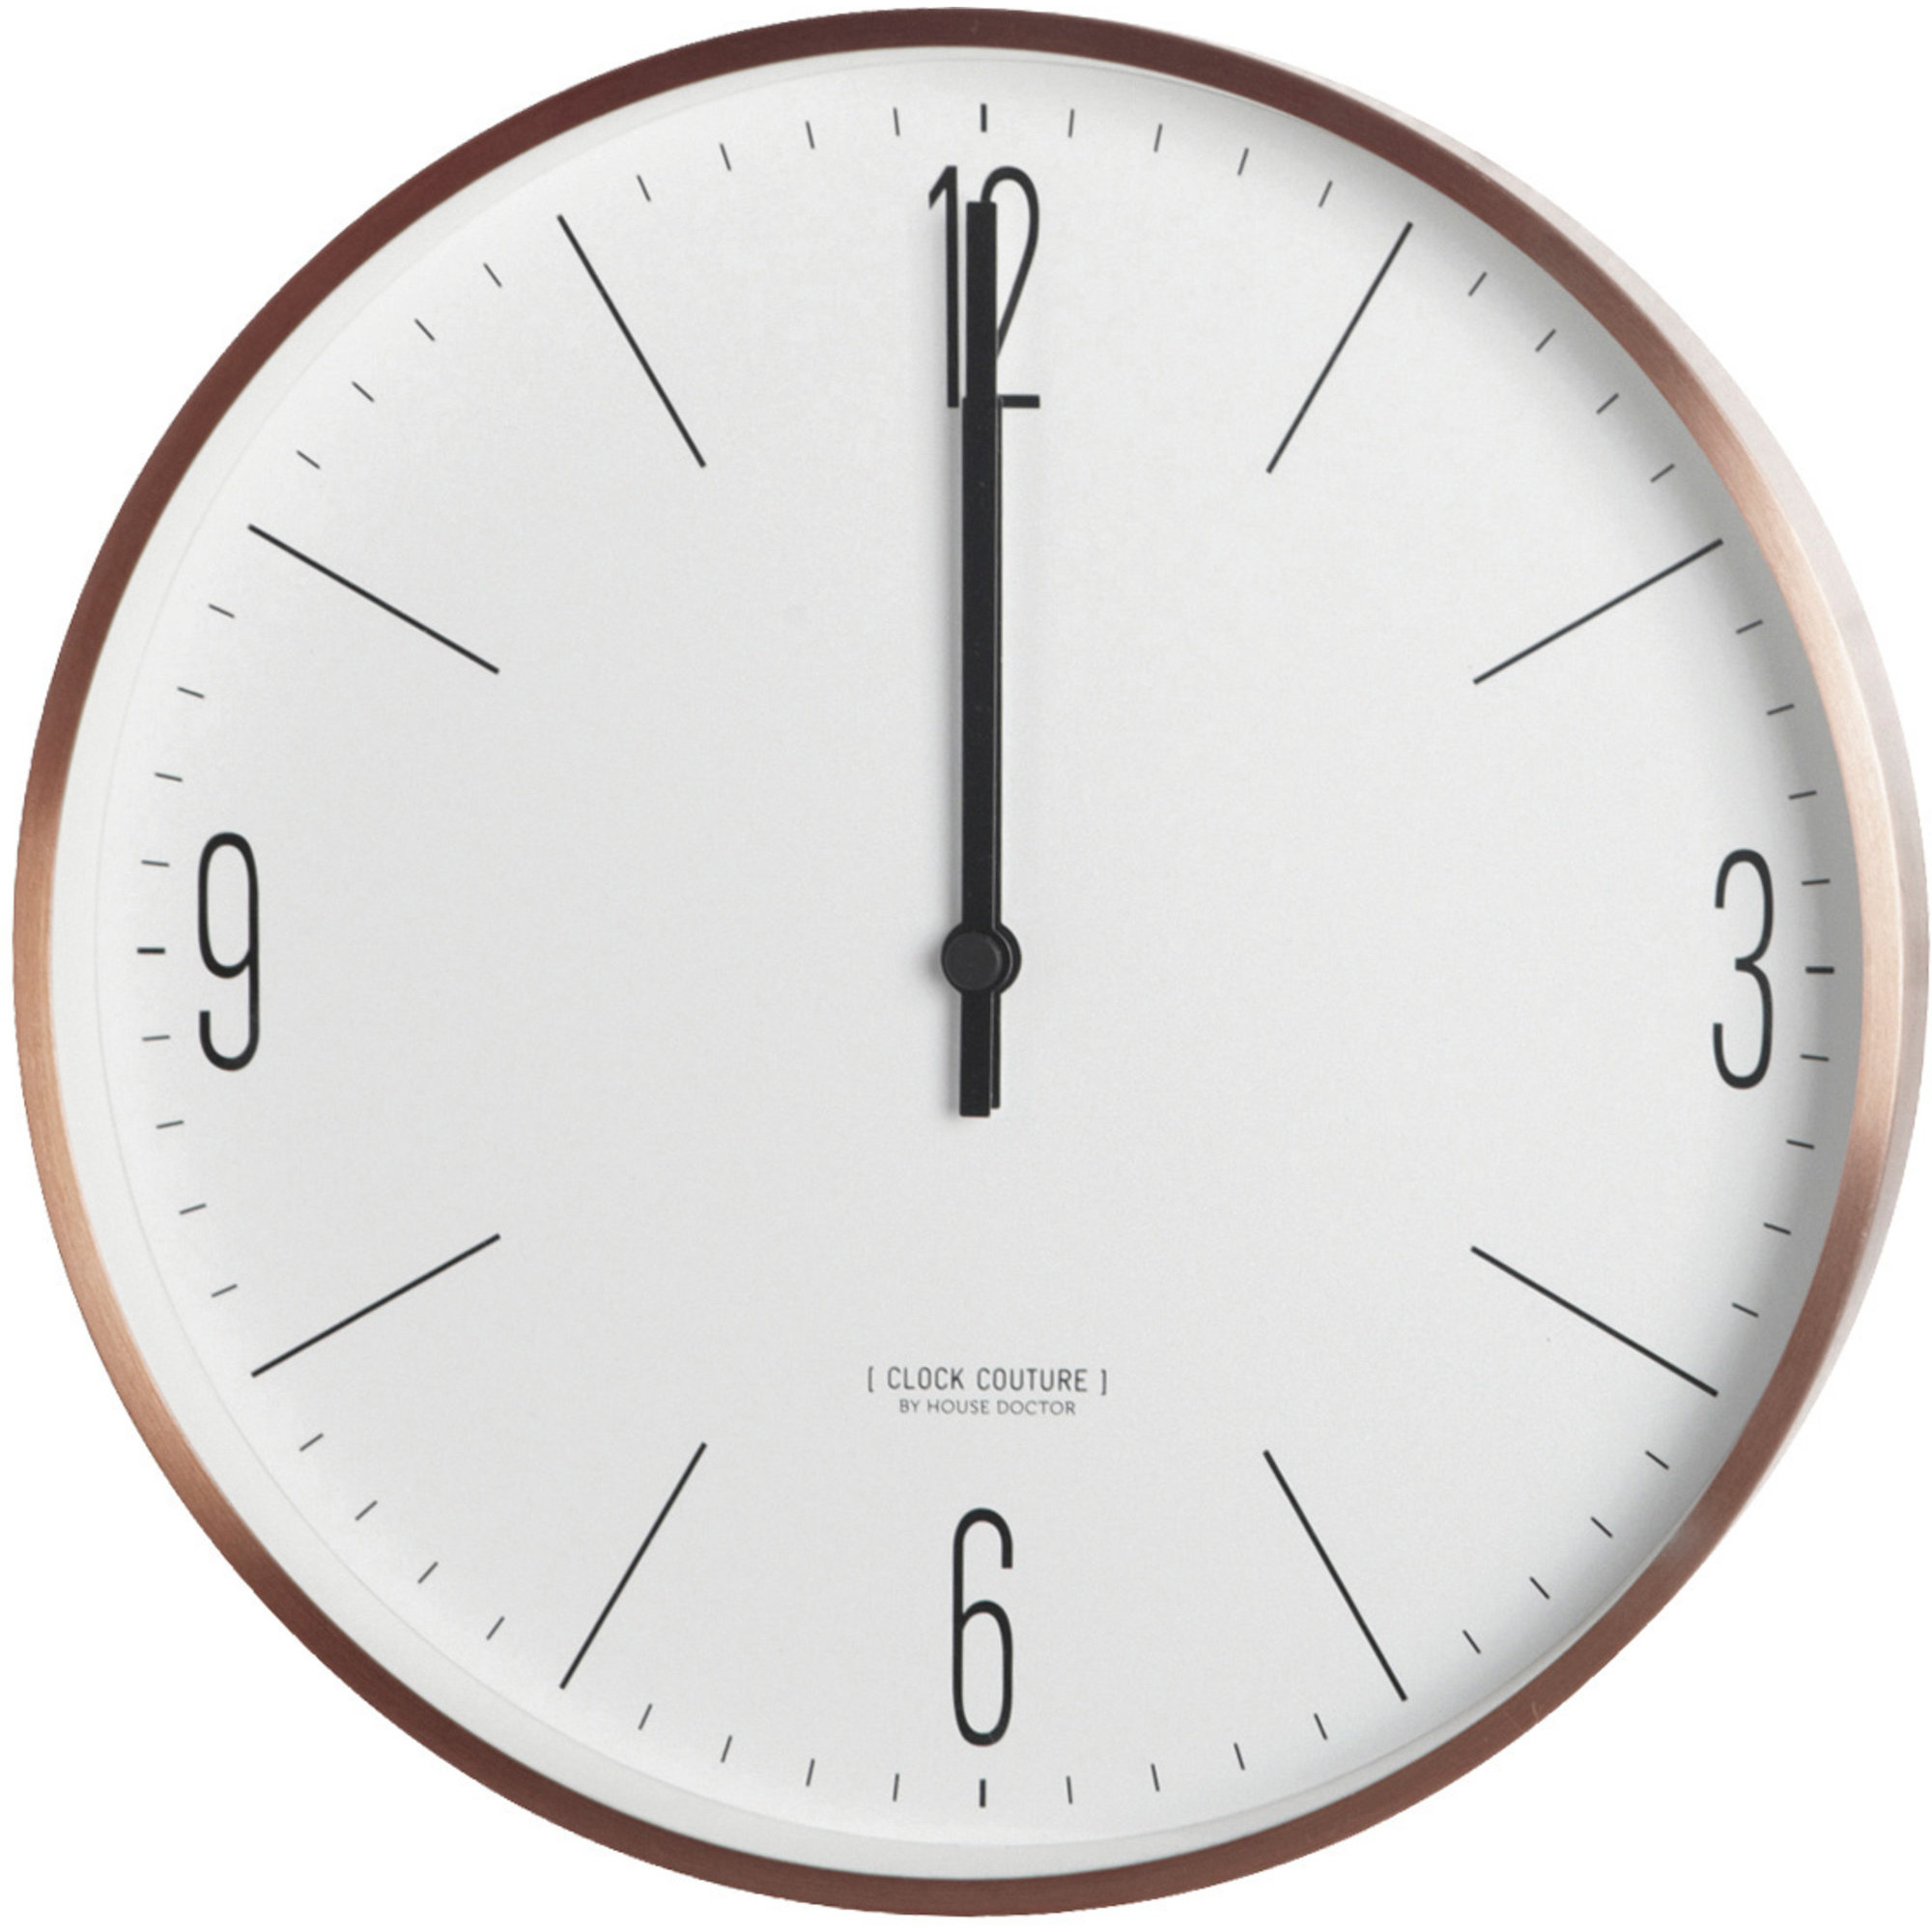 Läs mer om House Doctor Väggklocka Clock Couture Guld/Vit